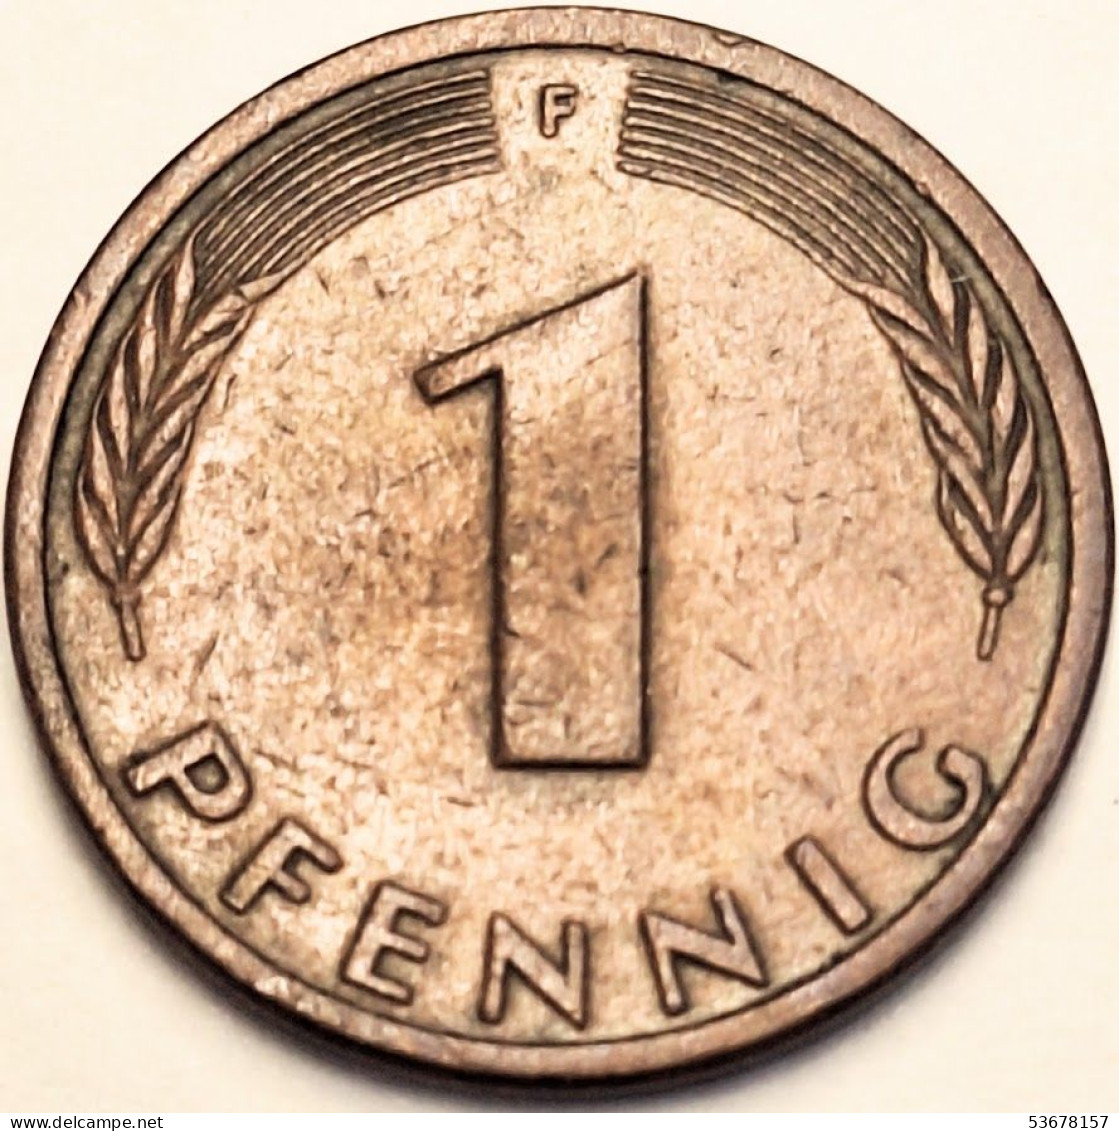 Germany Federal Republic - Pfennig 1981 F, KM# 105 (#4484) - 1 Pfennig